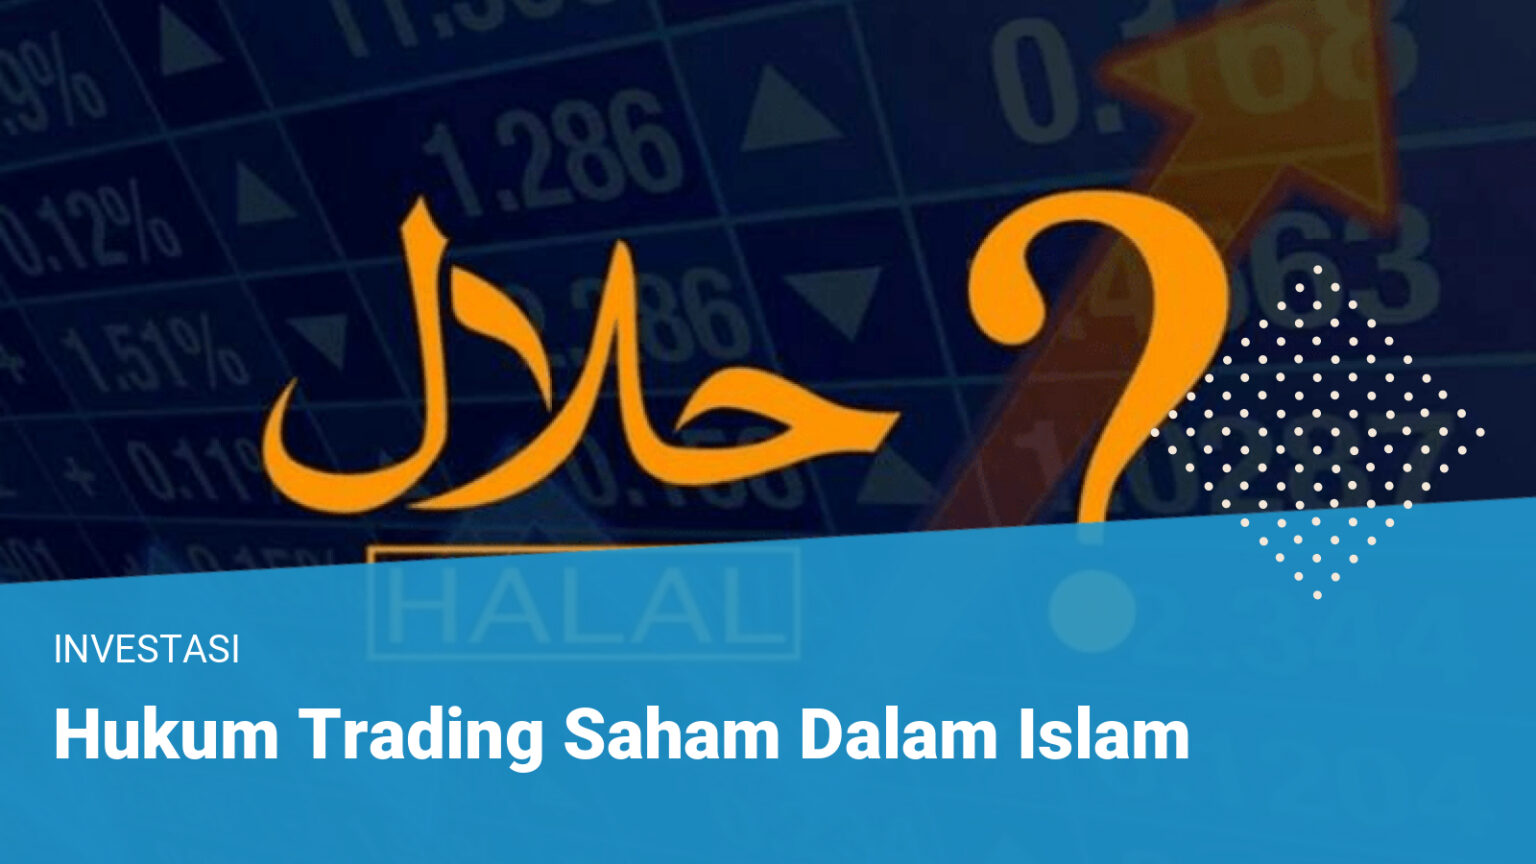 Hukum Trading Saham Dalam Islam – Trading Saham Halal atau Haram?